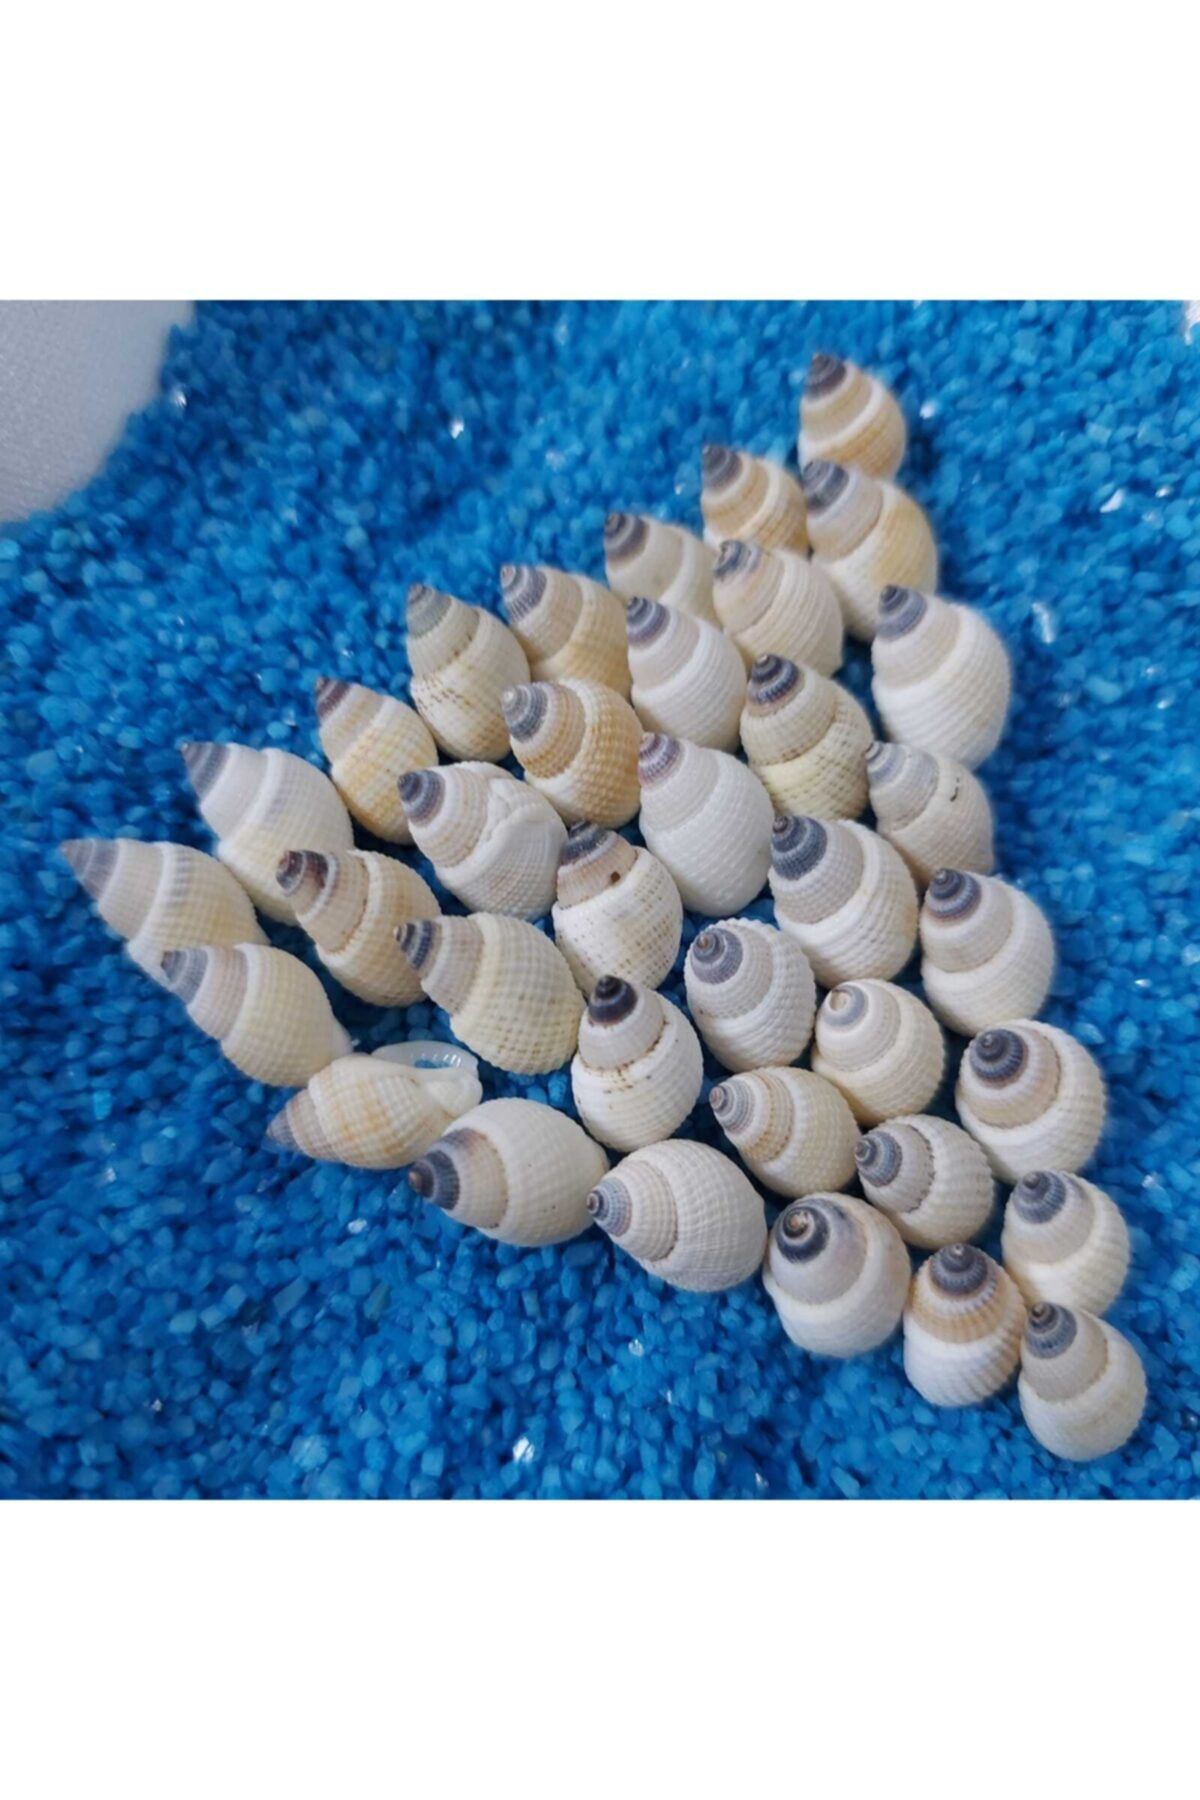 Aker Hediyelik 1cm Küçük Deniz Kabuğu 50gr Teraryum Deniz Kabukları Silis Akvaryum Süs Ufak Kabuk Modelleri